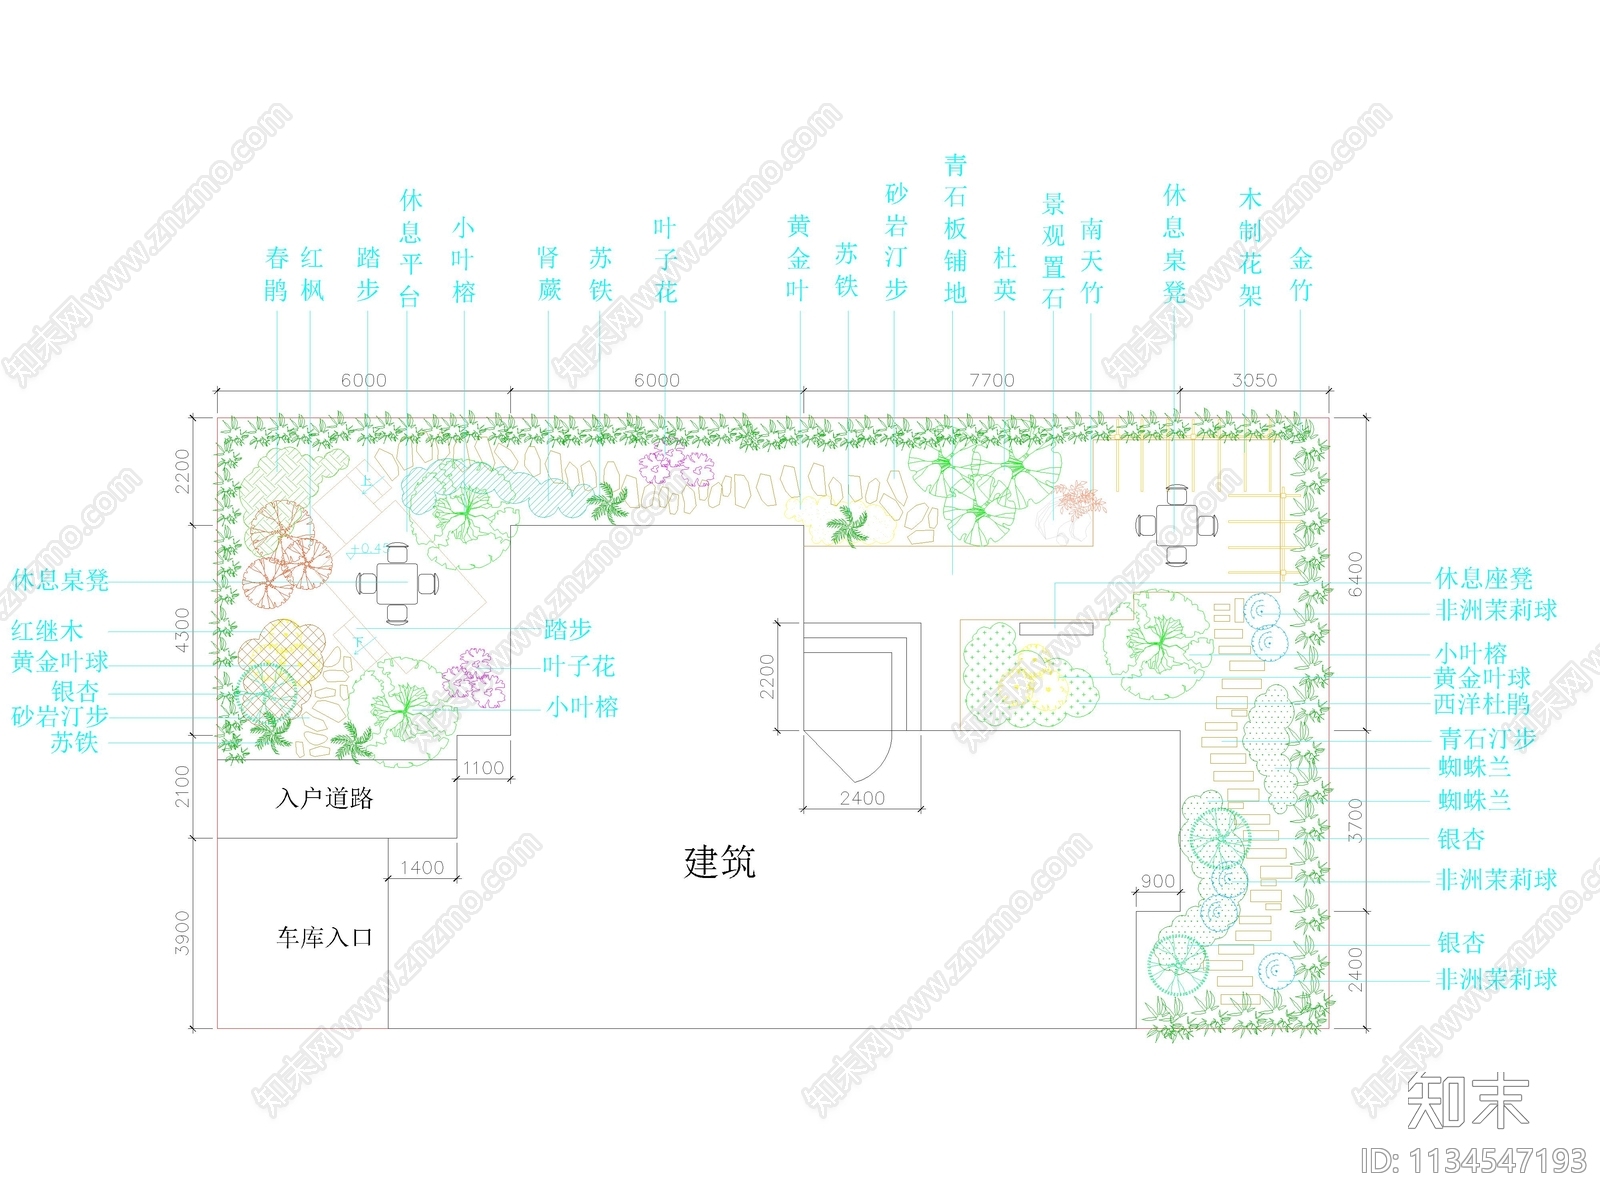 47套别墅庭院花园景观平面图施工图下载【ID:1134547193】